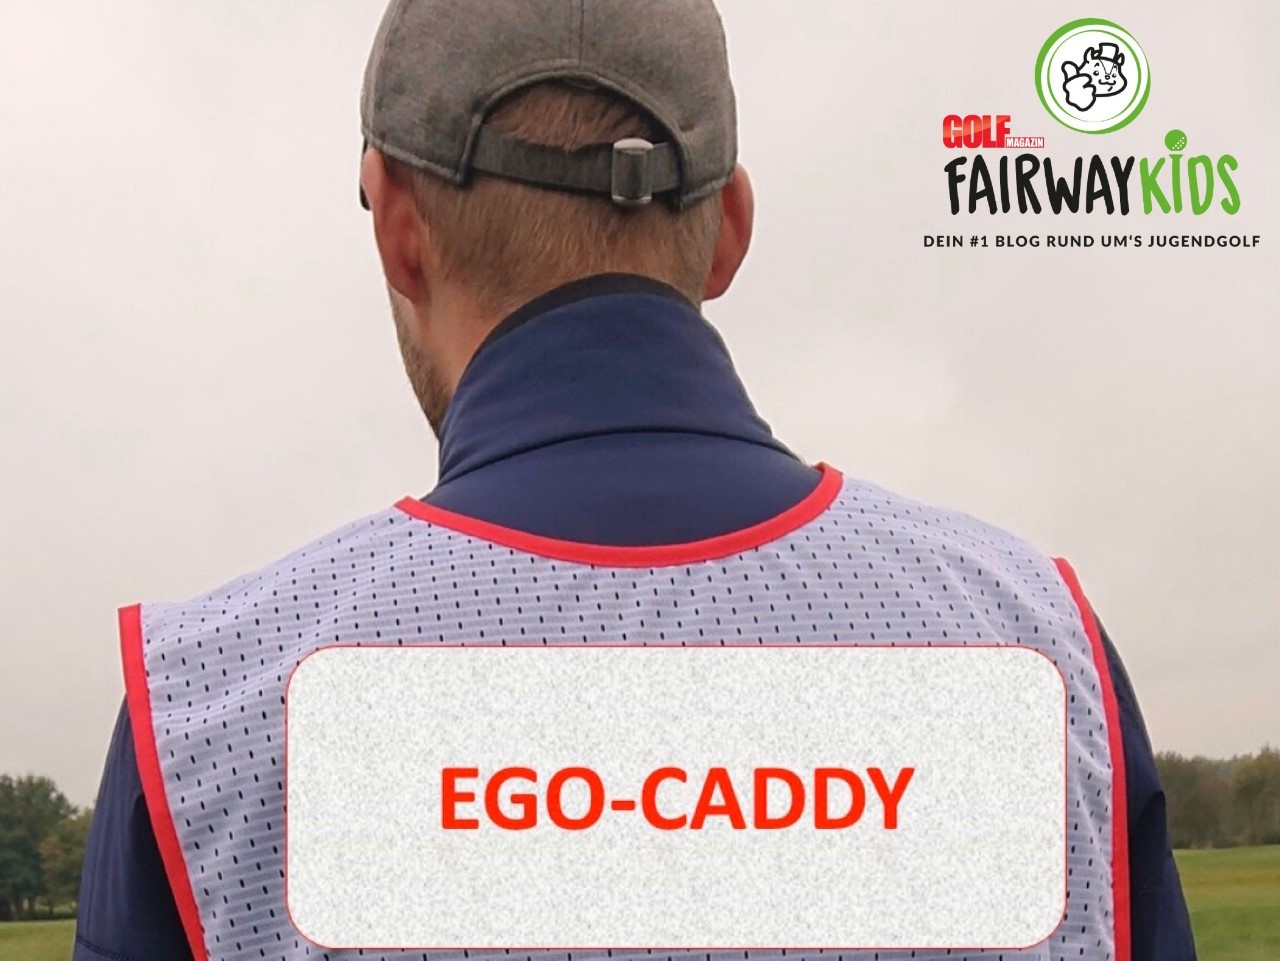 Ego-Caddy